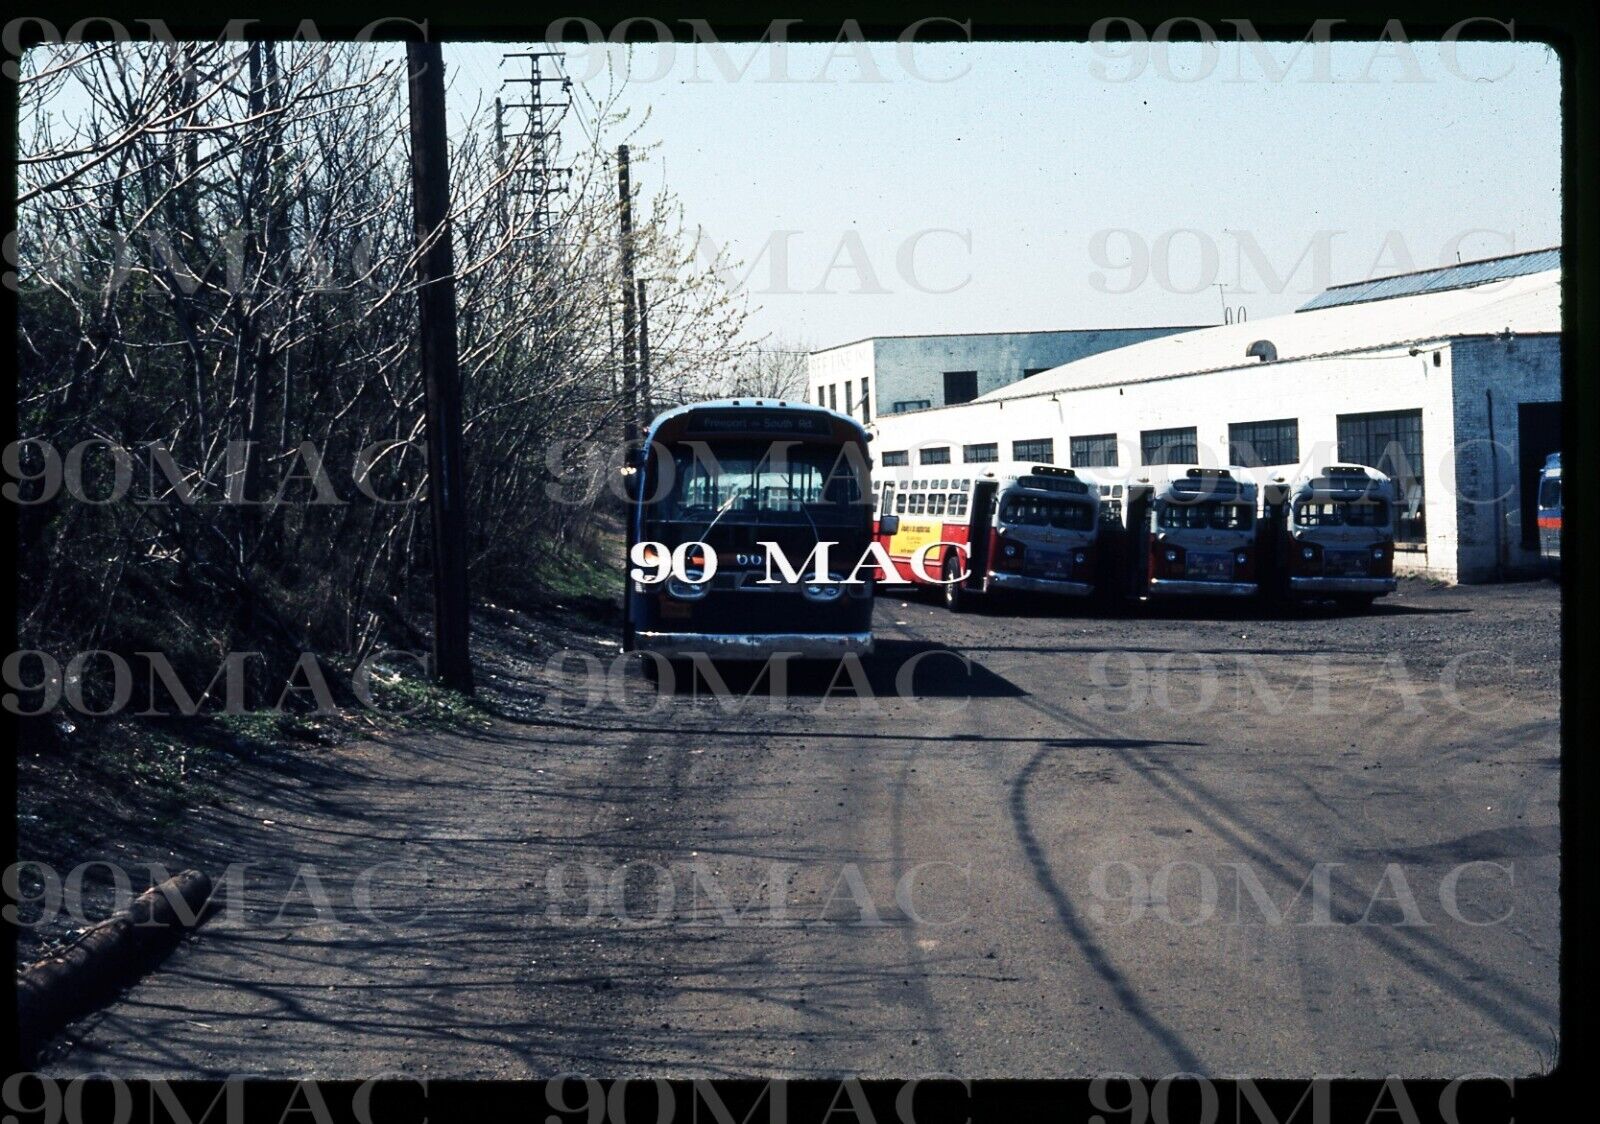 MSBA. GM COACH BUS #667. Original Slide. Long Island (NY) 1974.